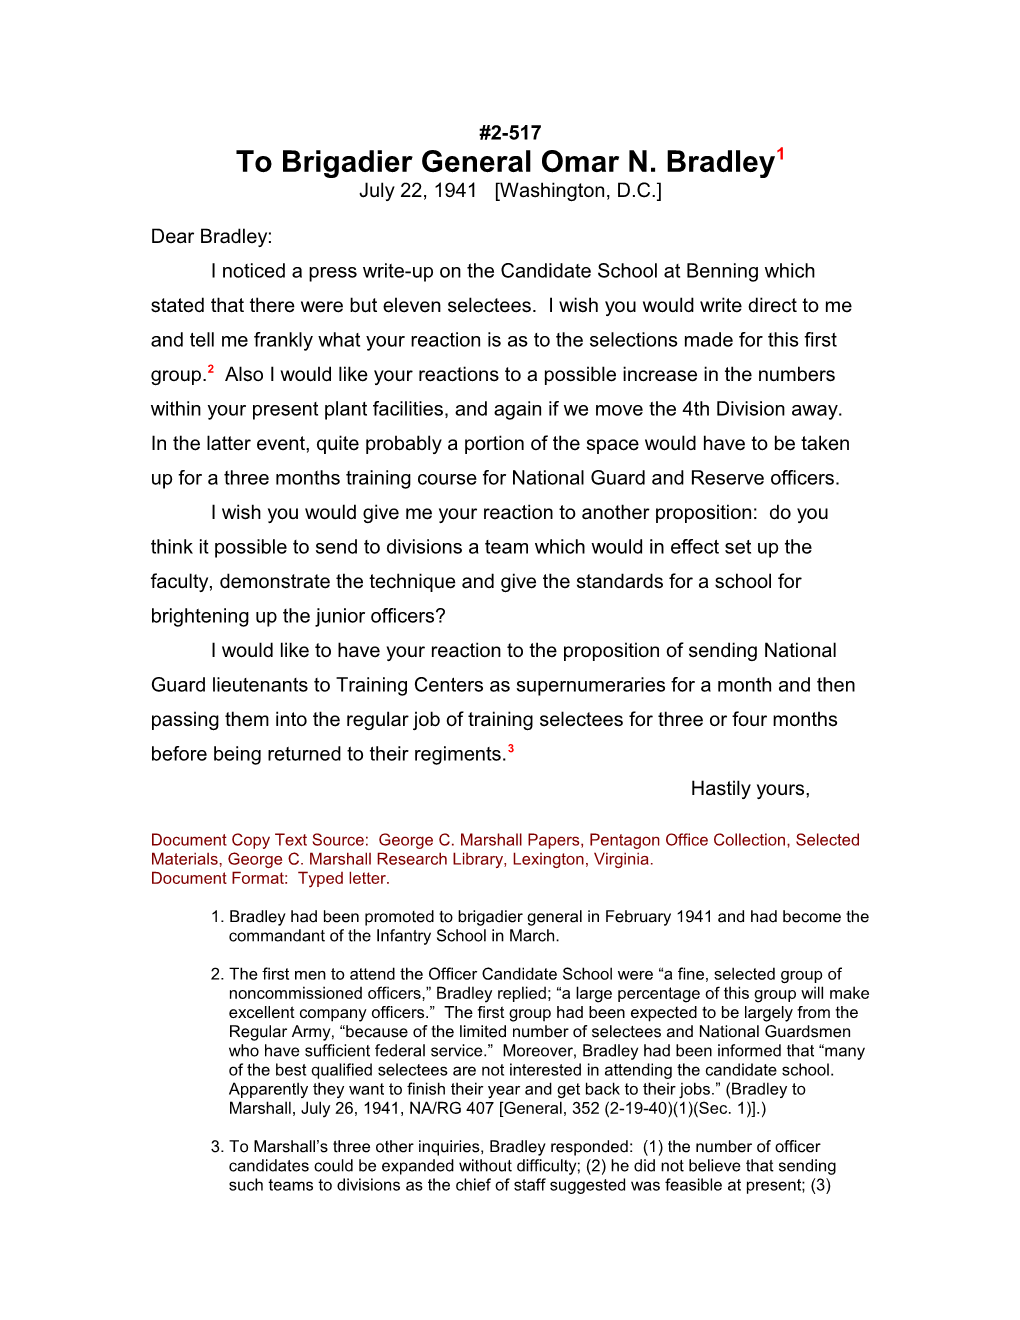 To Brigadier General Omar N. Bradley1